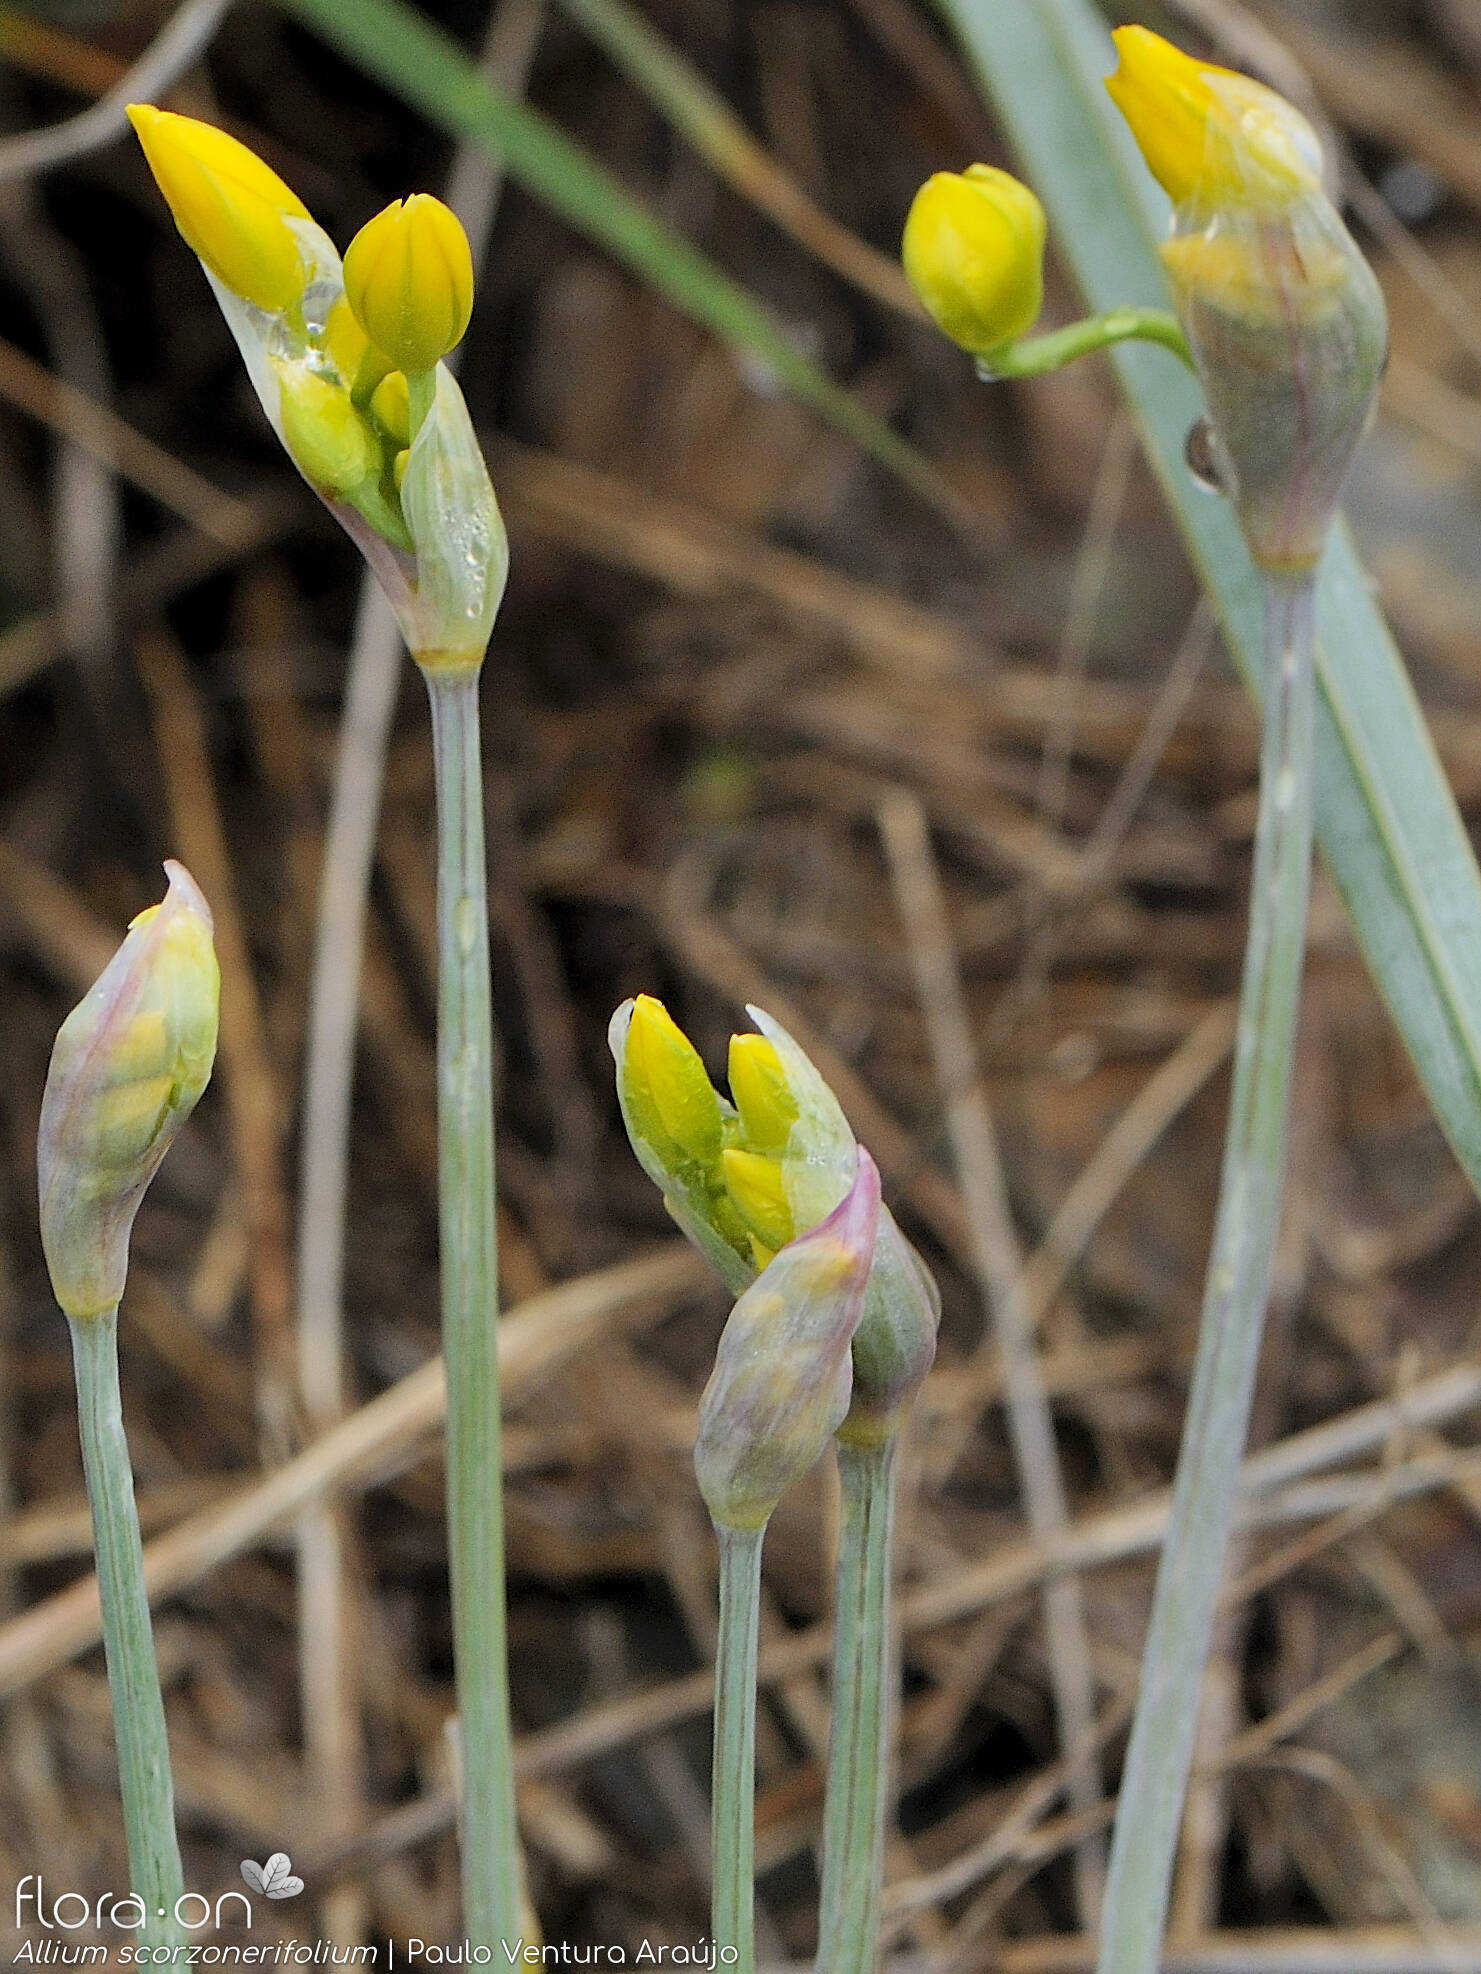 Allium scorzonerifolium - Flor (geral) | Paulo Ventura Araújo; CC BY-NC 4.0